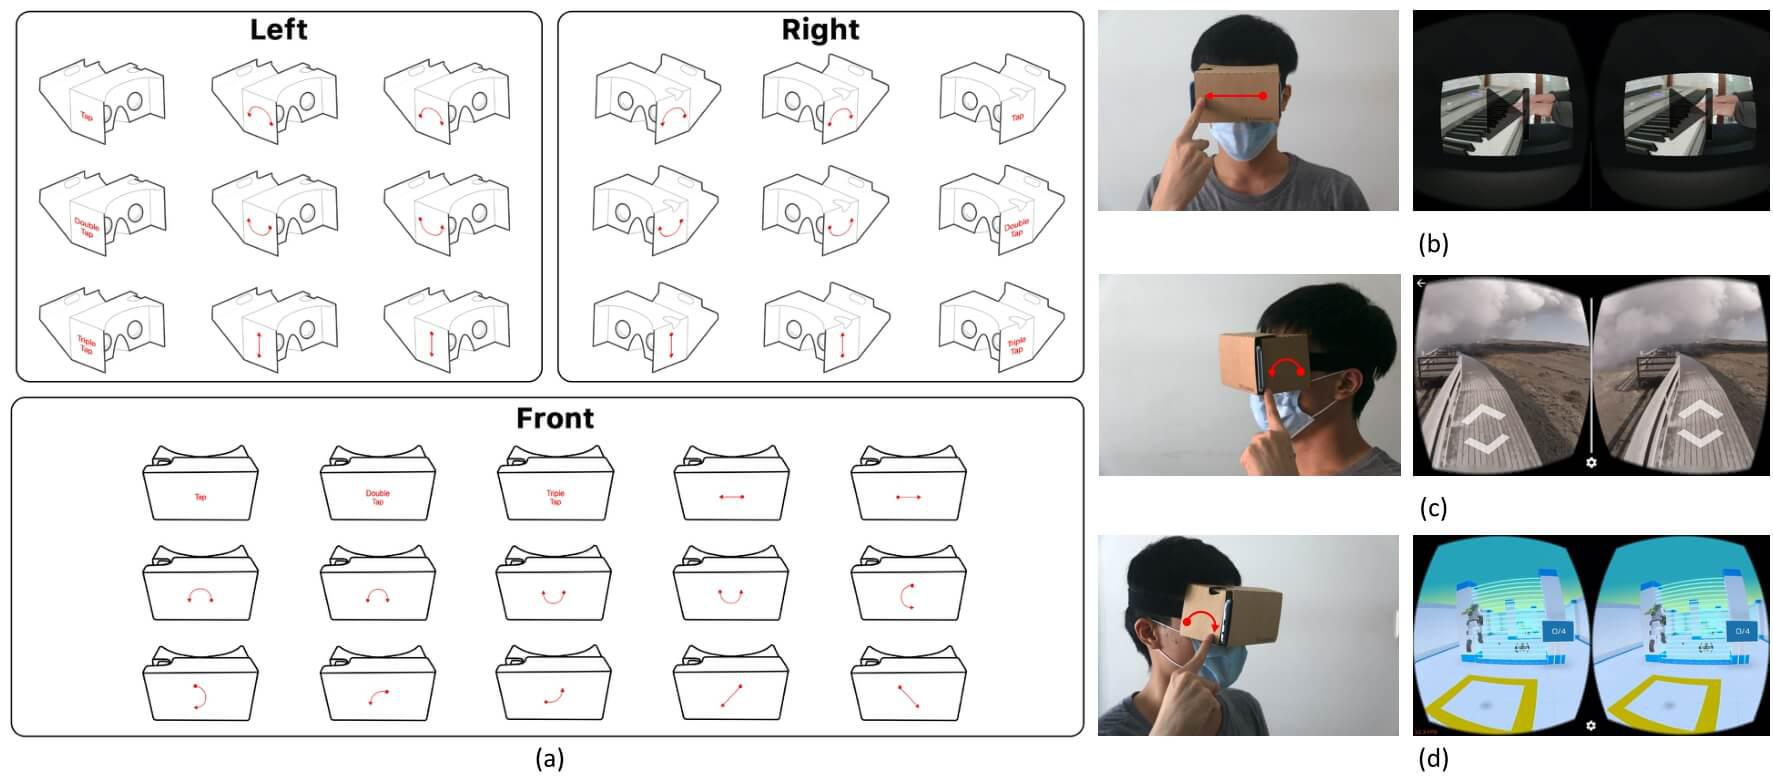 在低成本 VR 頭戴式顯示器表面實現基於手勢互動的方法